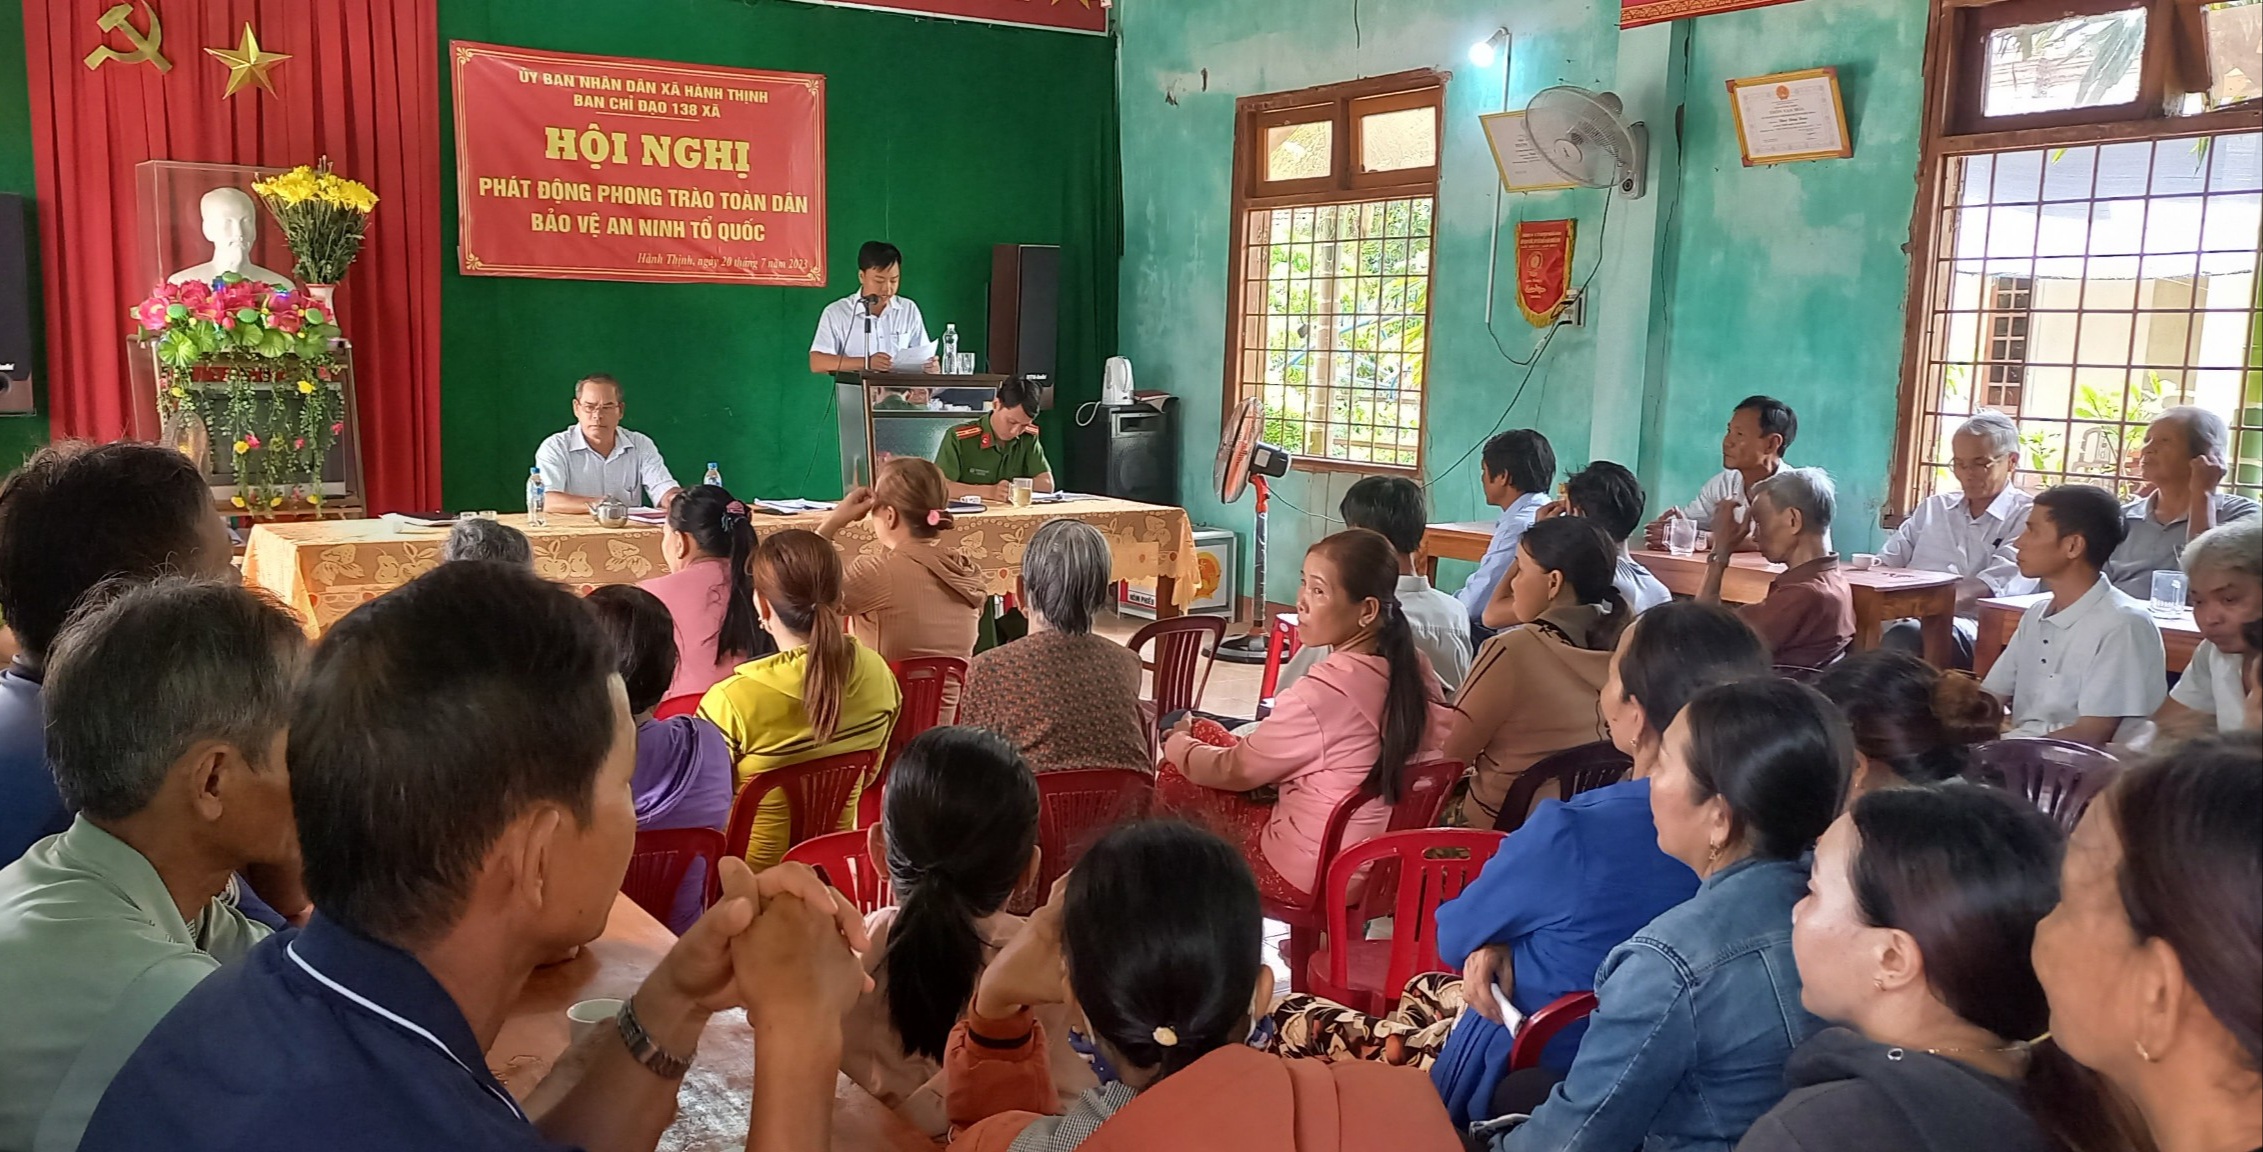 Hội nghị phát động phong trào toàn dân bản vệ an ninh tổ quôc ở thôn Đồng Xuân